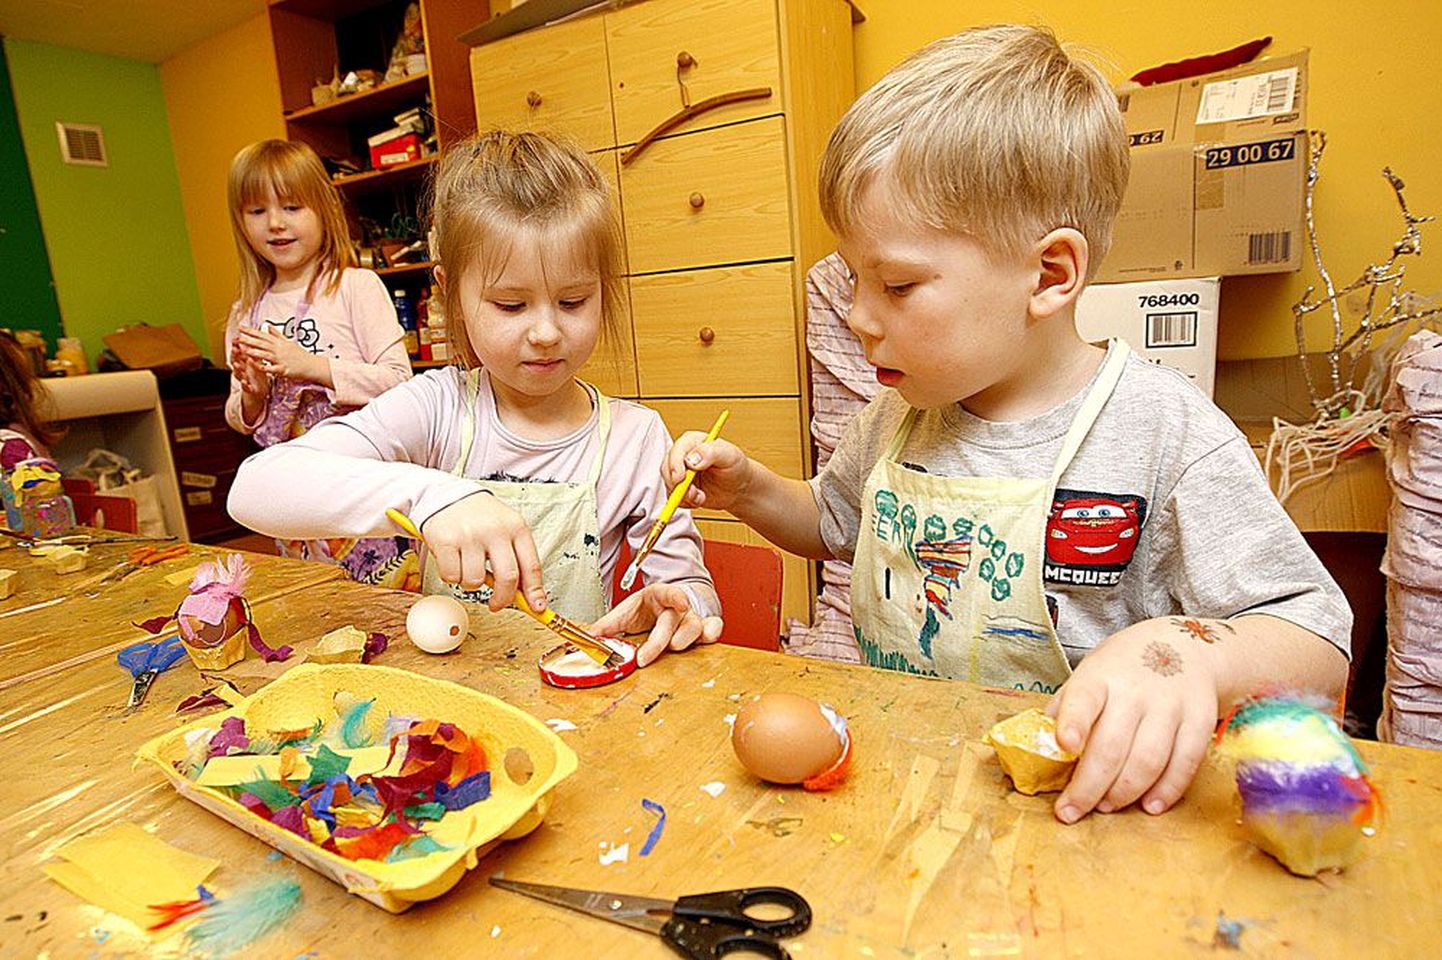 Ristikheina lasteaia kõige vanema kunstiringi rühma lapsed Lisete Aruoja ja Eerik Miller kaunistasid eelmisel nädalal munapühade eel tühjaks puhutud mune.